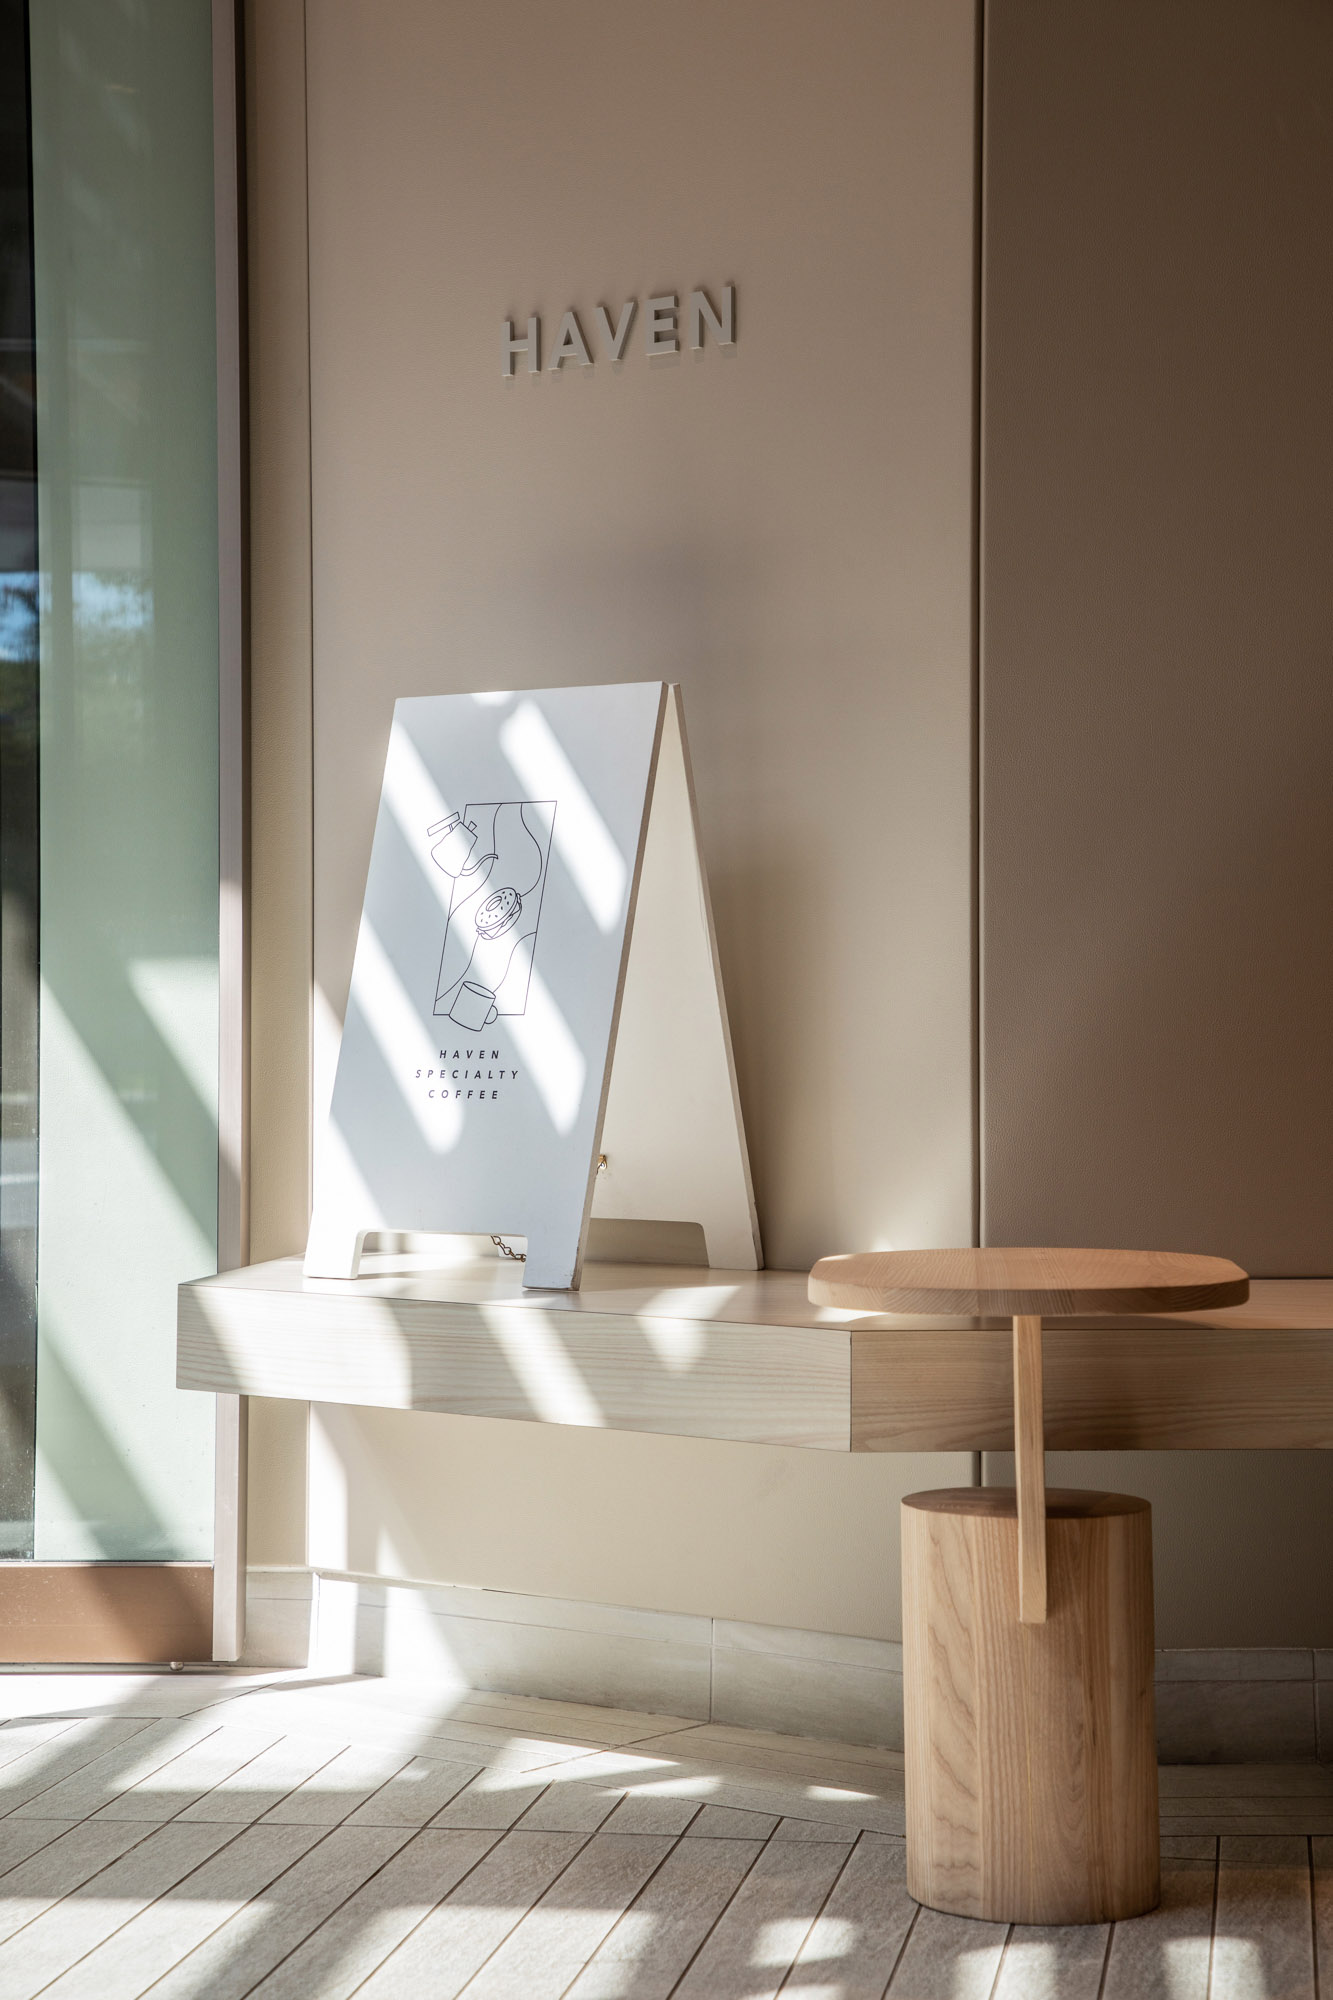 MOYA & CO,澳大利亞,悉尼,咖啡廳設計案例,咖啡廳裝修,Haven,咖啡廳設計方案,精品咖啡廳,極簡風格咖啡廳